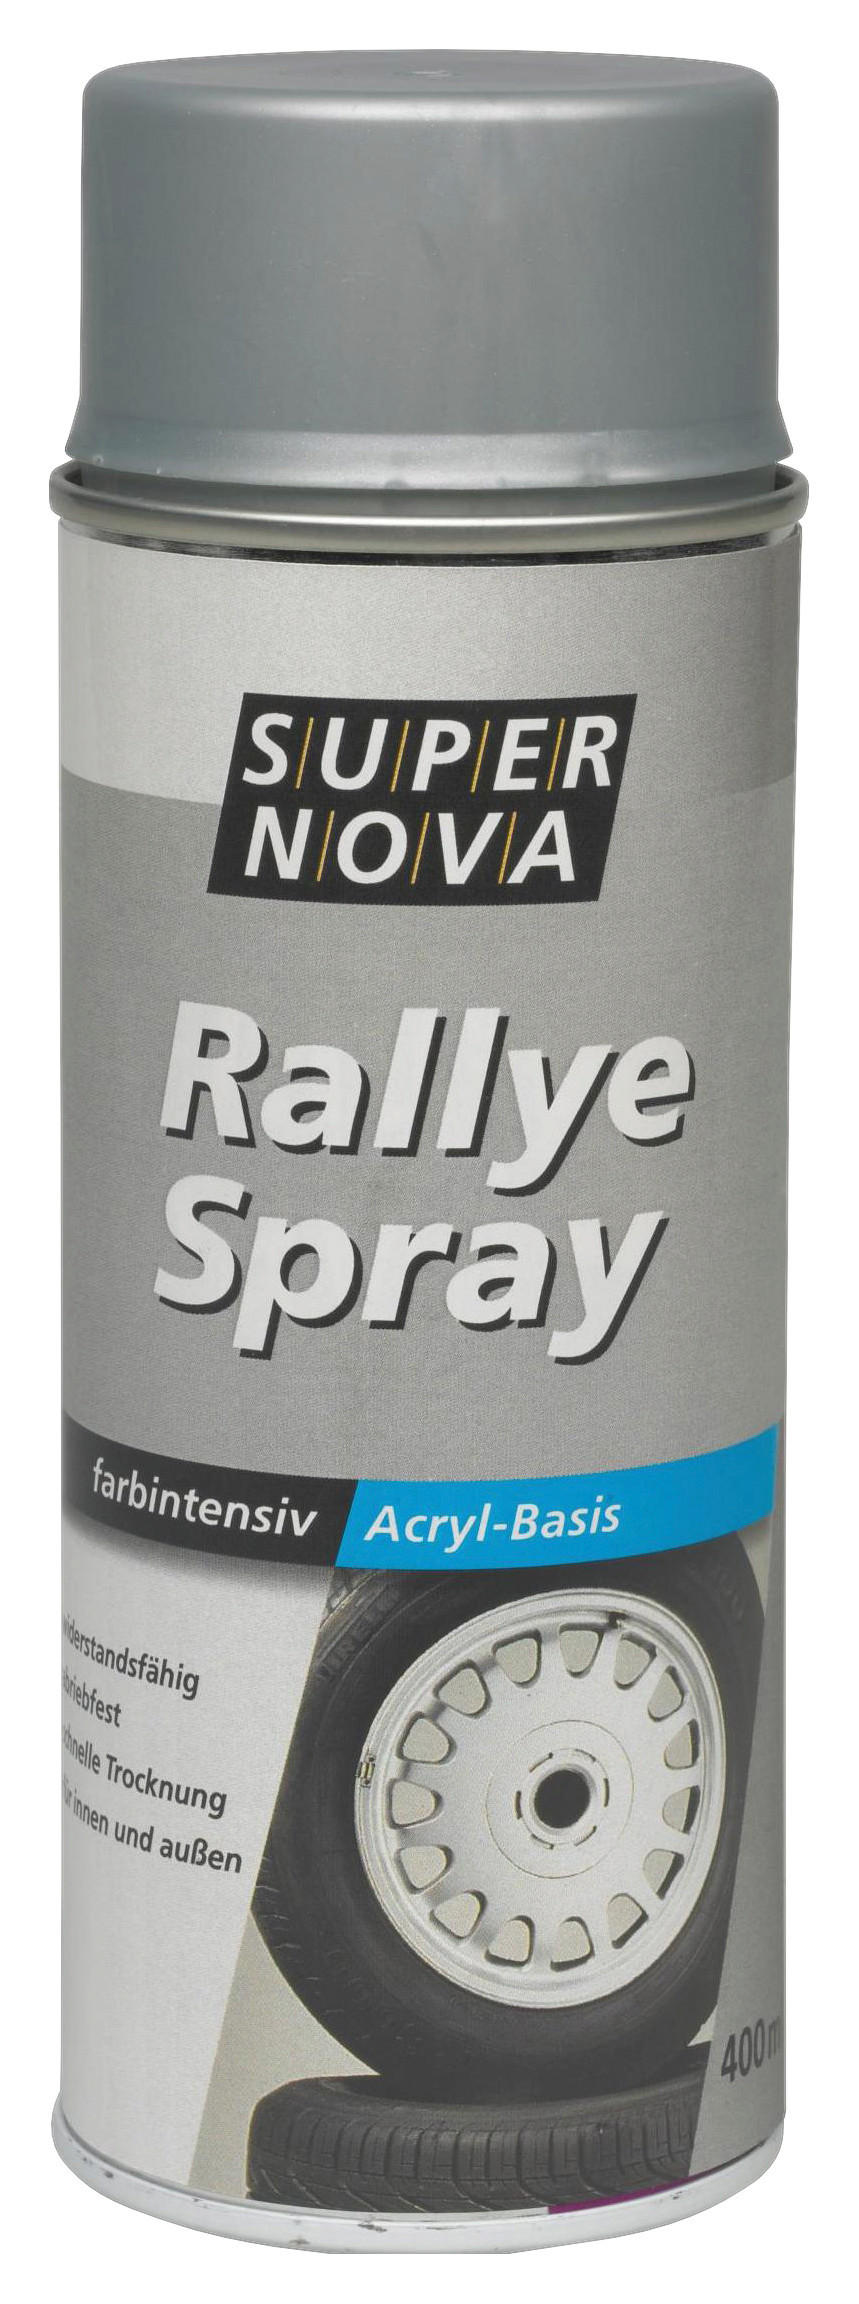 Super-Nova Rallye-Spray silber glänzend ca. 0,4 l Rallye-Spray 400ml - silber (400ml)